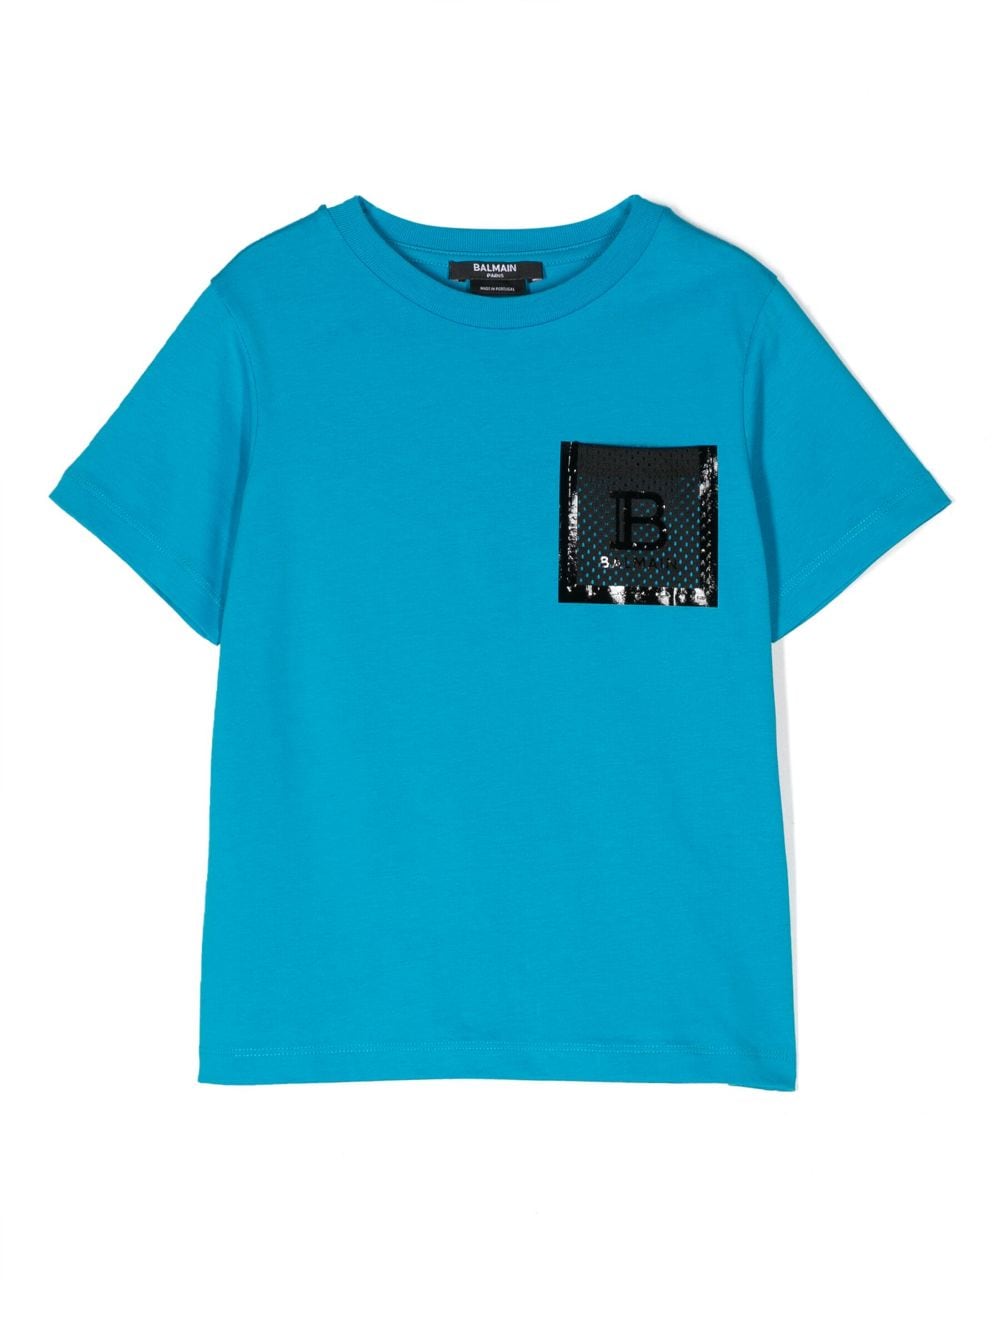 Balmain Kids mesh logo pocket T-shirt - Blue